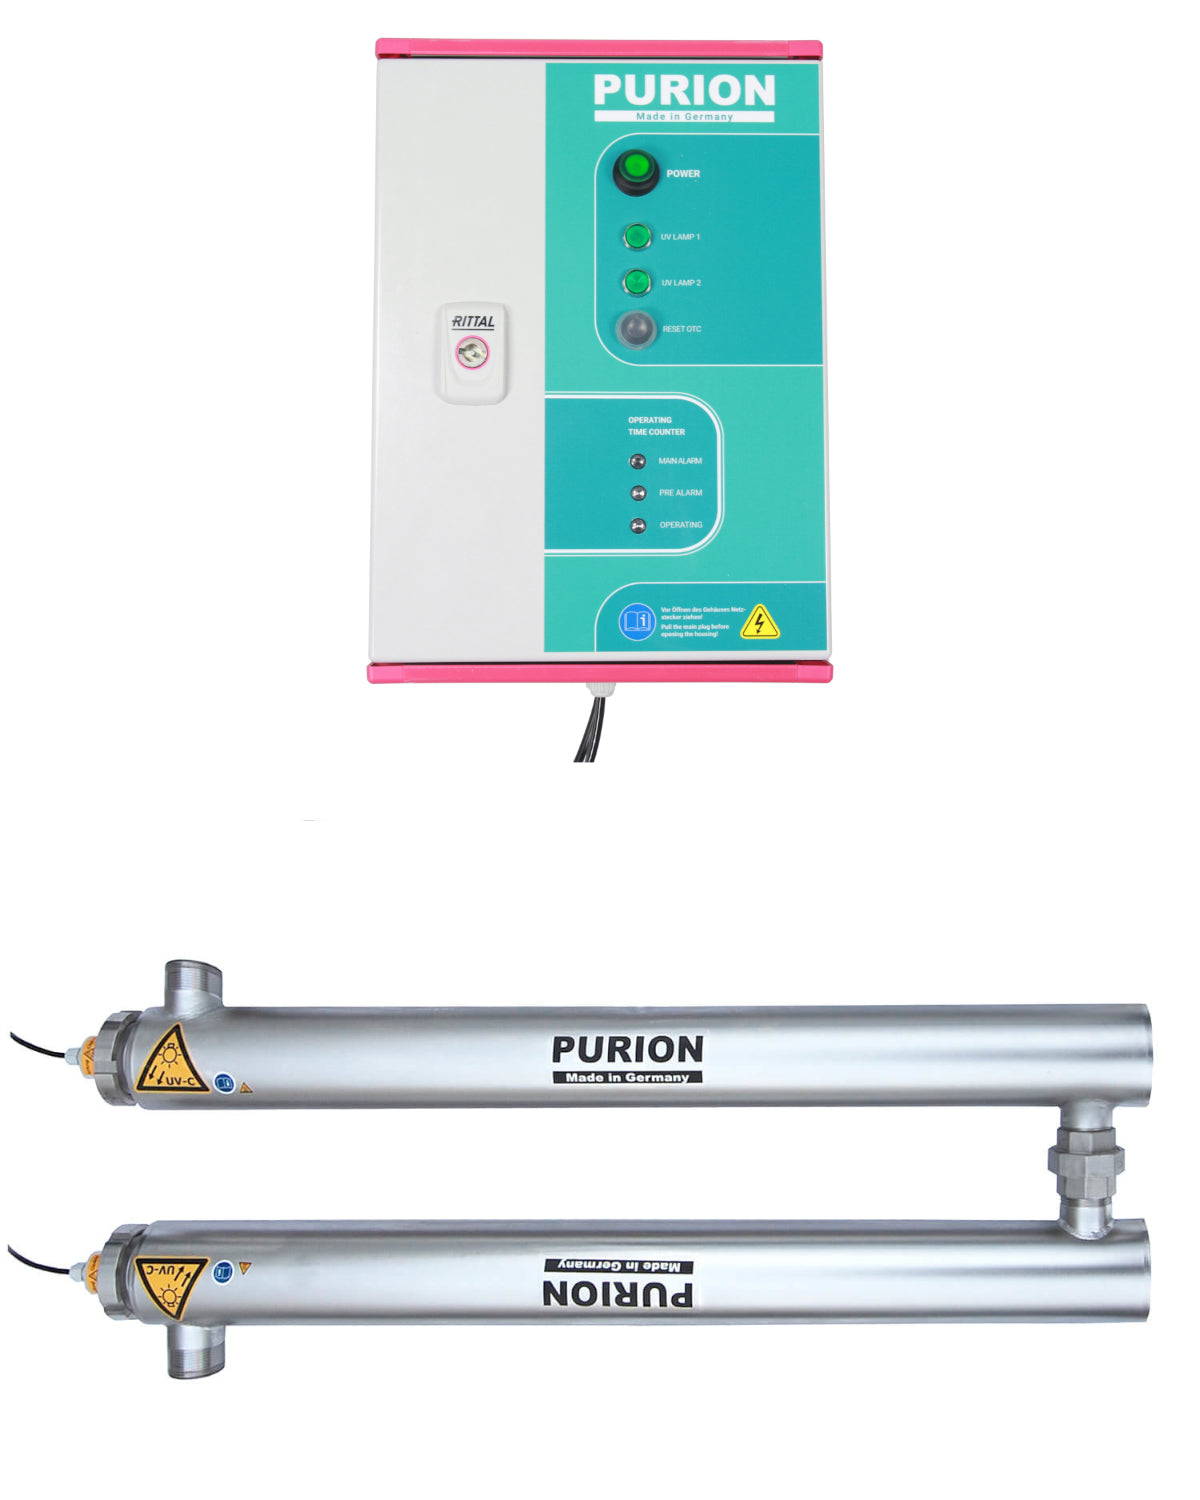 Die Purion GmbH stellt das PURION 2501 DUAL OTC Plus vor – ein Wasseraufbereitungssystem mit UV-C-Desinfektionstechnologie. Dieses innovative System gewährleistet nicht nur eine hervorragende Wasserqualität, sondern bietet auch eine